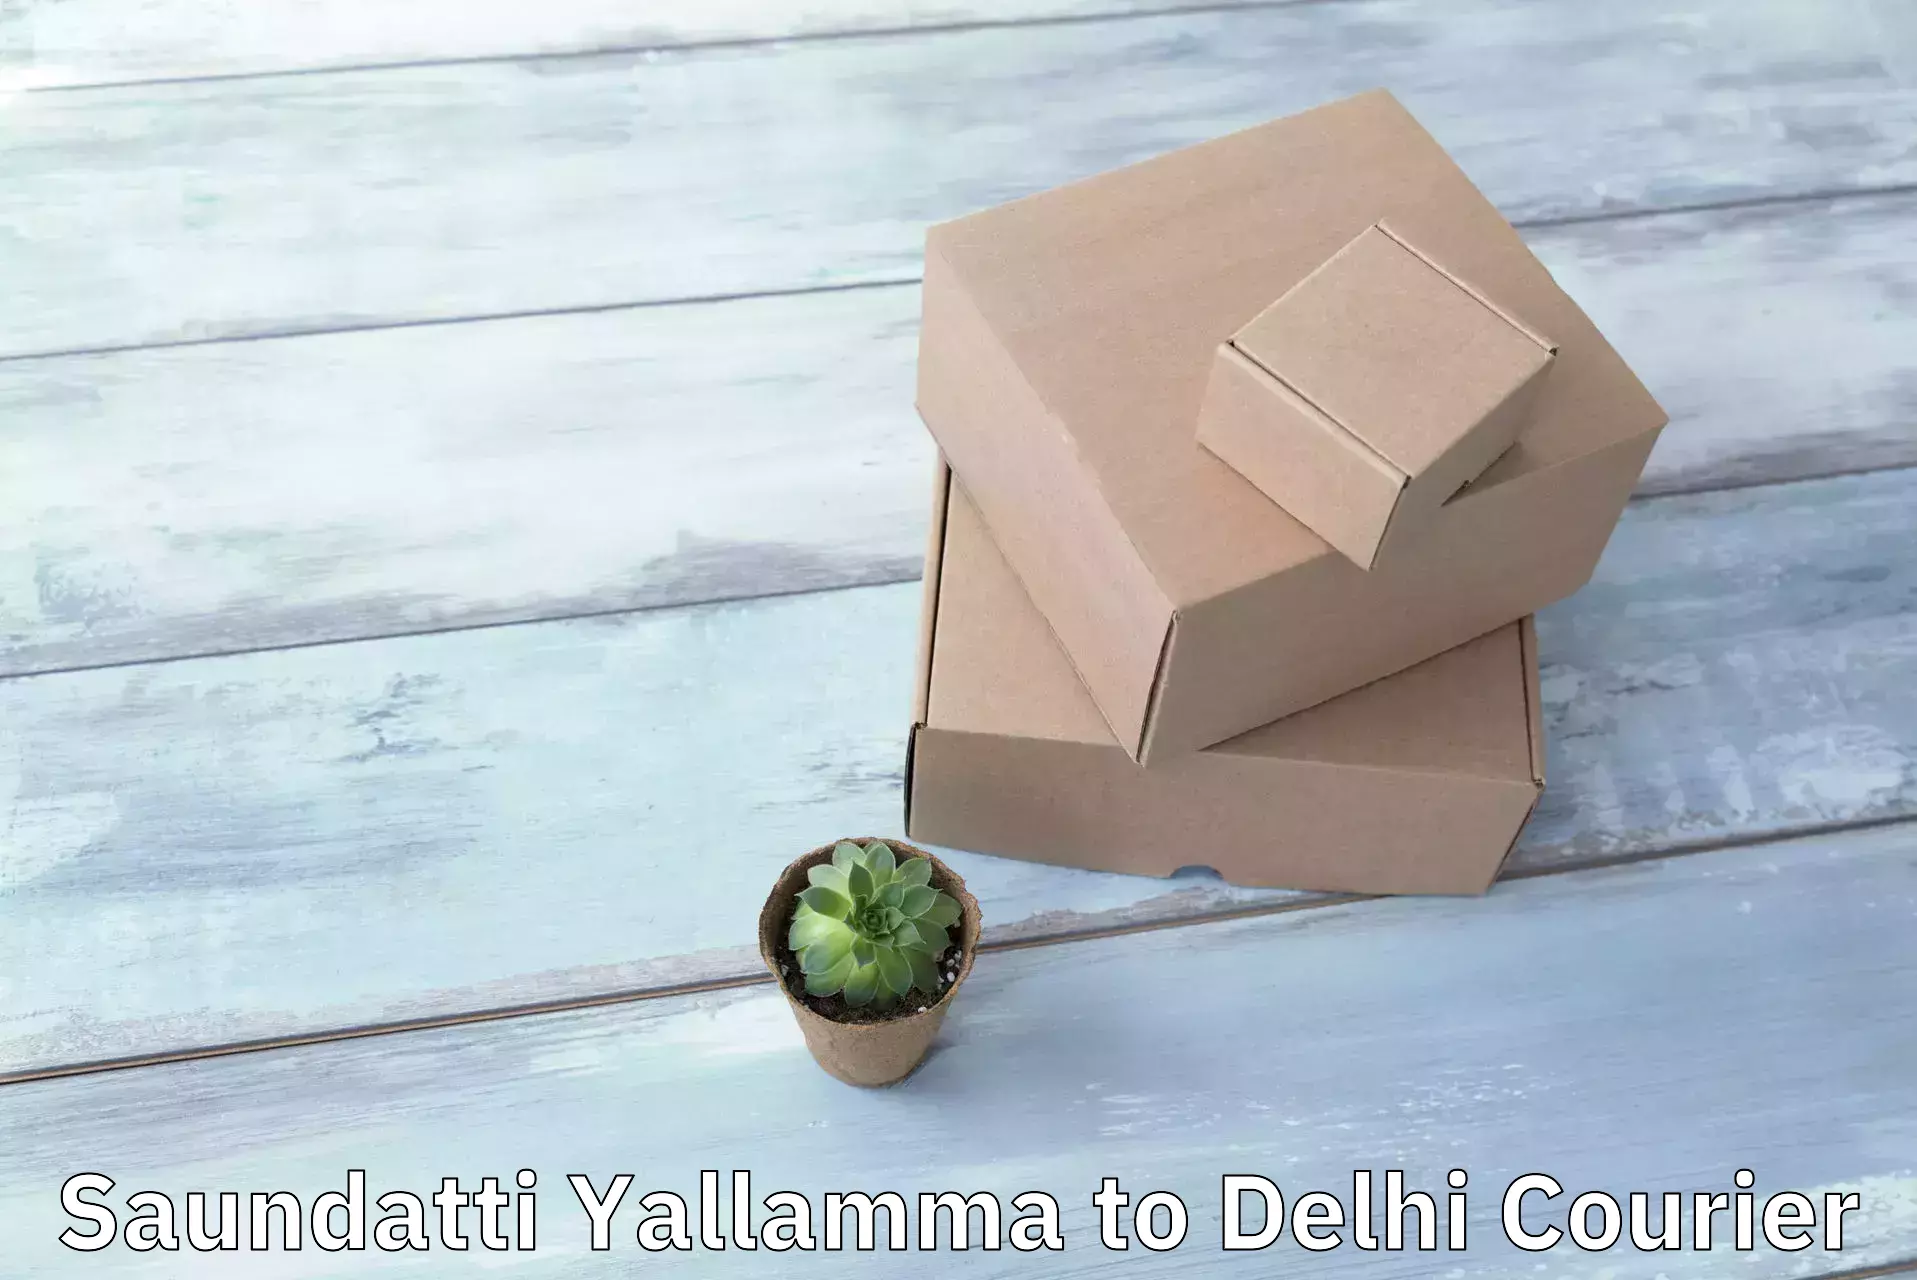 High-speed delivery in Saundatti Yallamma to IIT Delhi